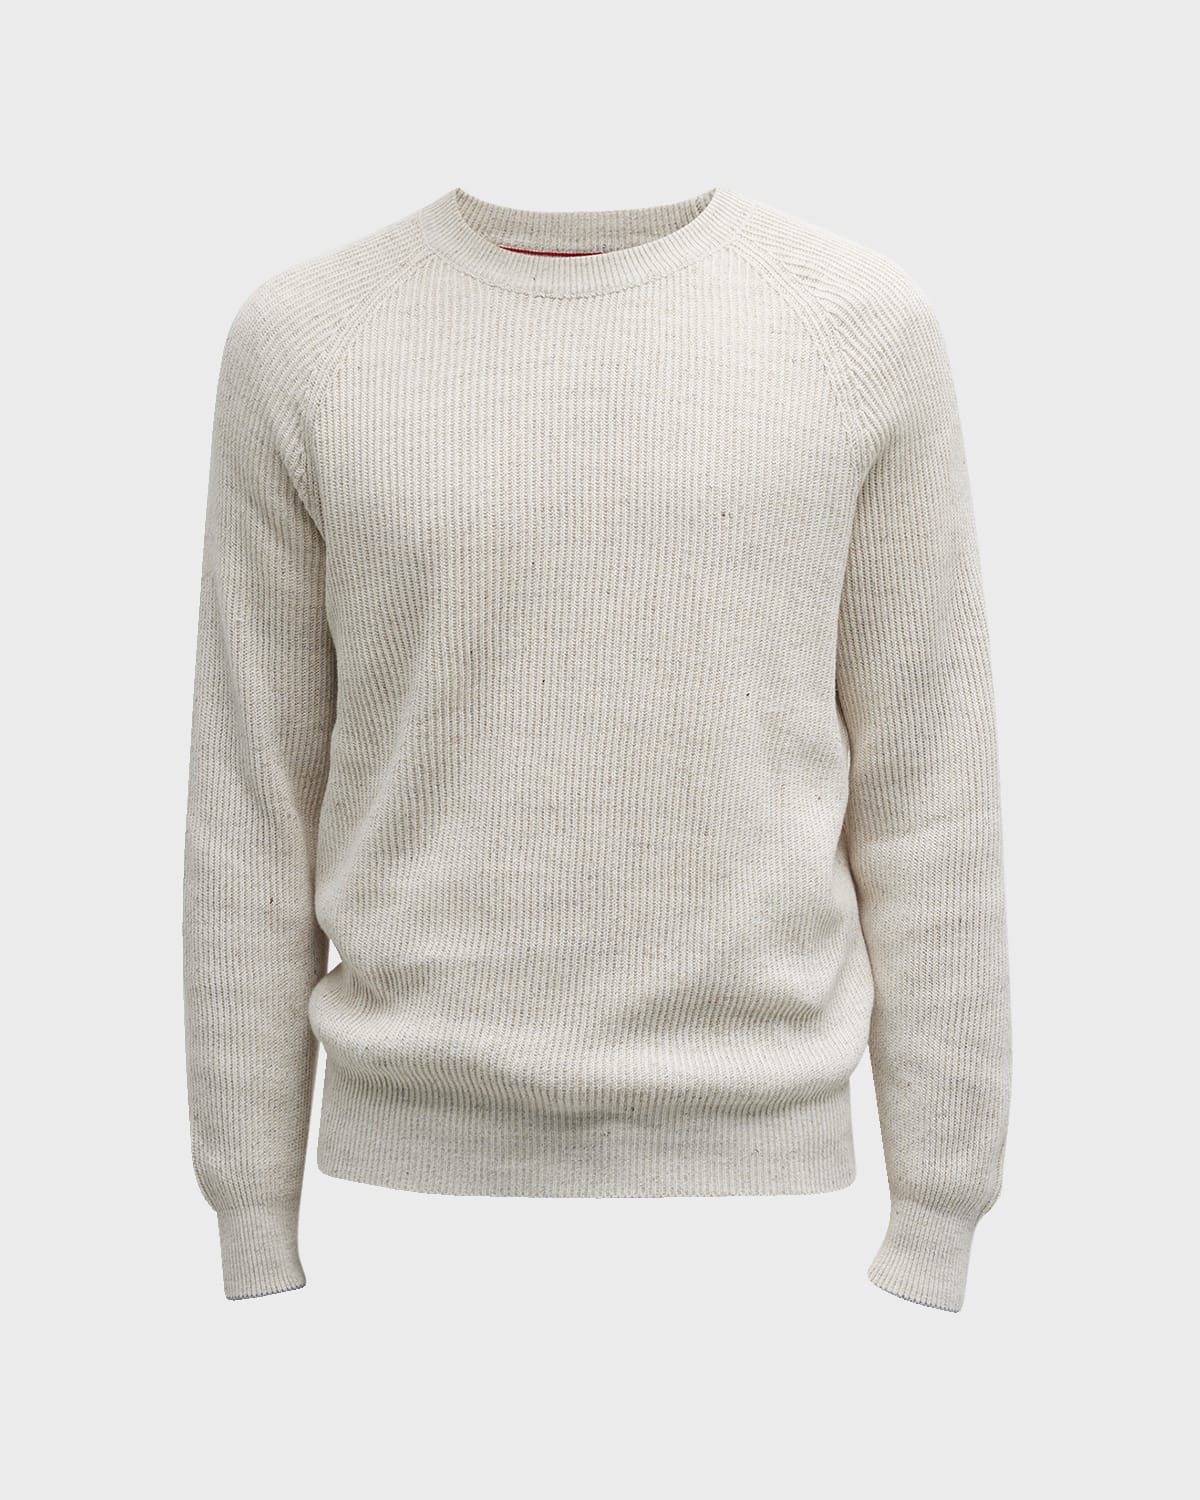 Designer Sweaters for Men | Marcus